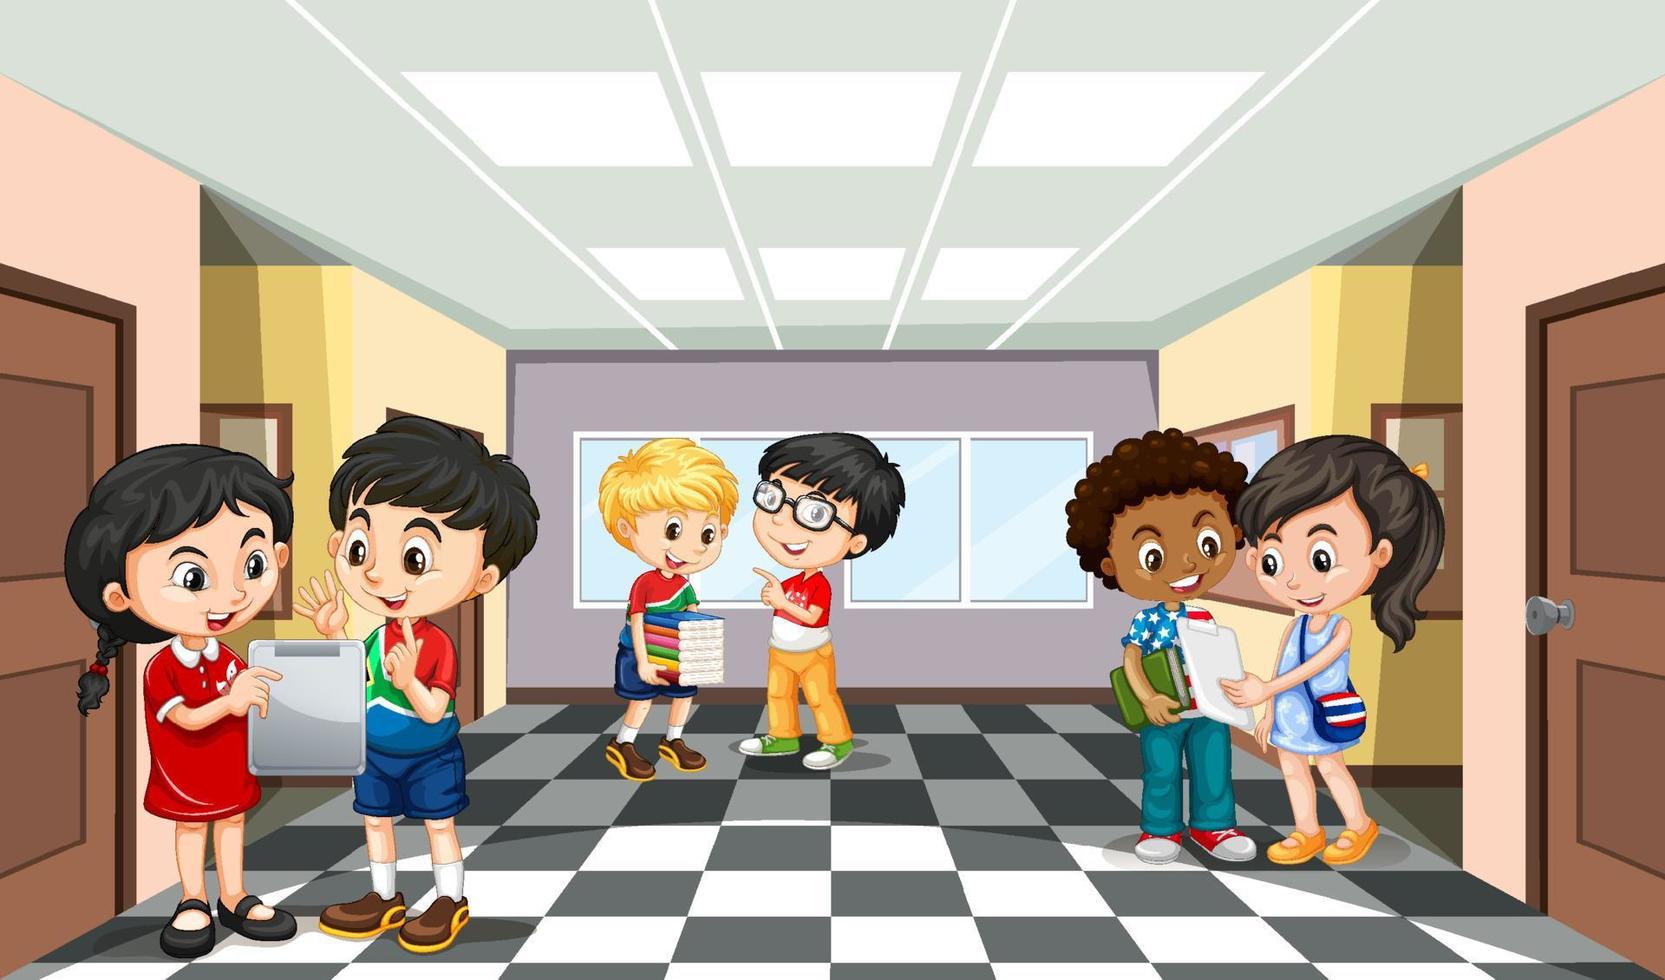 School scene with students cartoon character vector